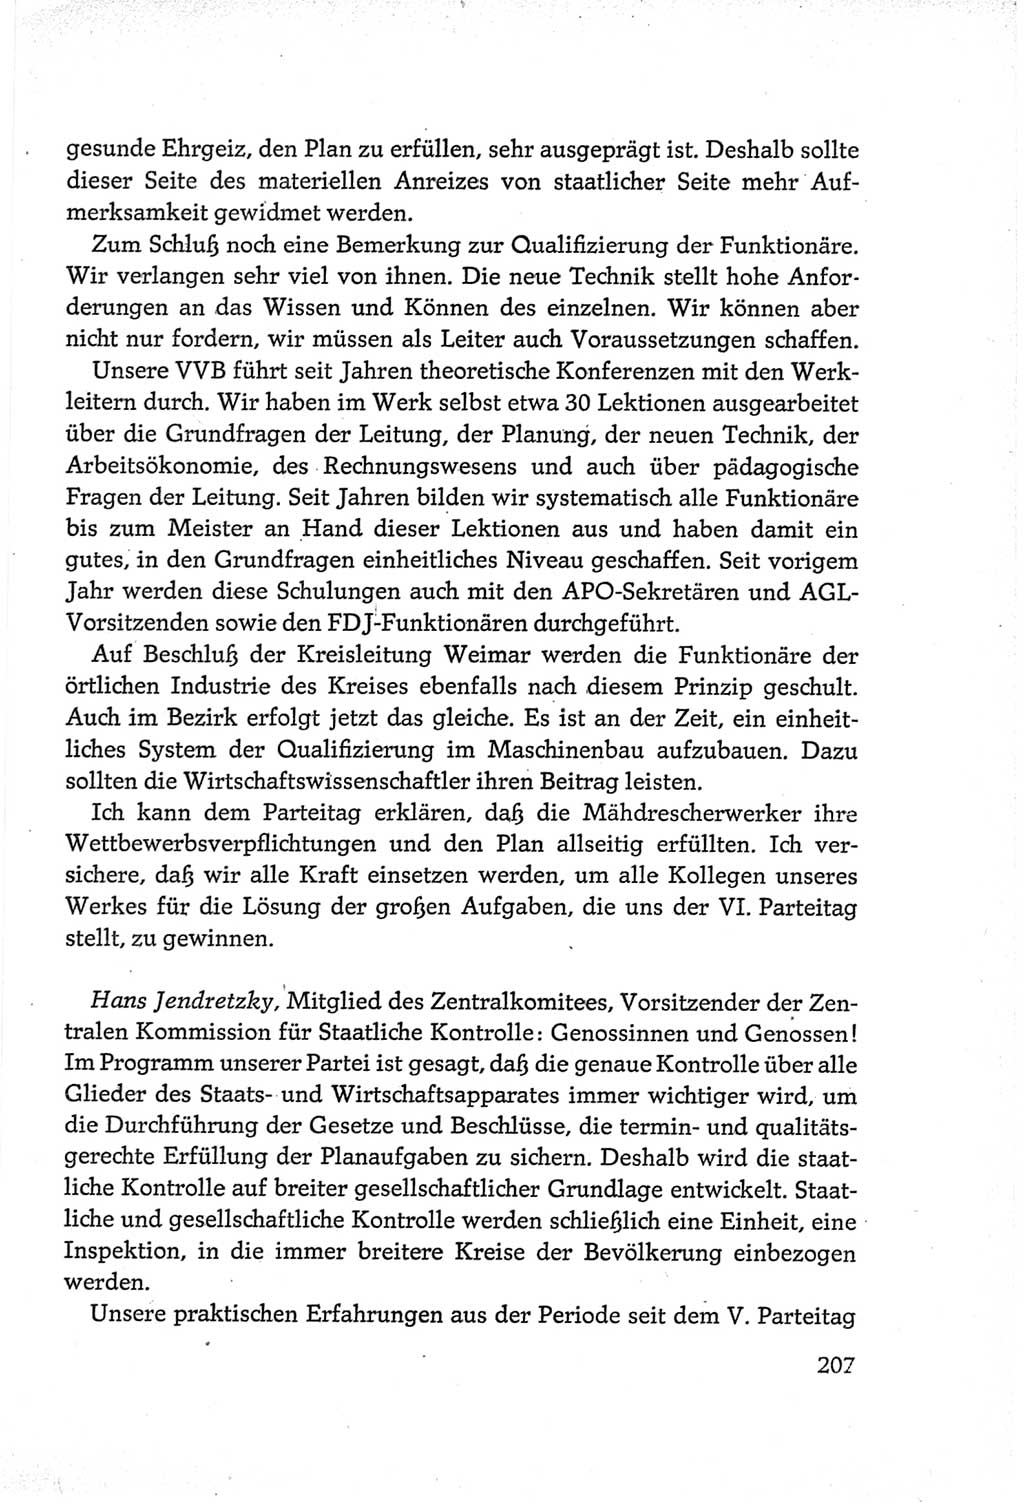 Protokoll der Verhandlungen des Ⅵ. Parteitages der Sozialistischen Einheitspartei Deutschlands (SED) [Deutsche Demokratische Republik (DDR)] 1963, Band Ⅲ, Seite 207 (Prot. Verh. Ⅵ. PT SED DDR 1963, Bd. Ⅲ, S. 207)